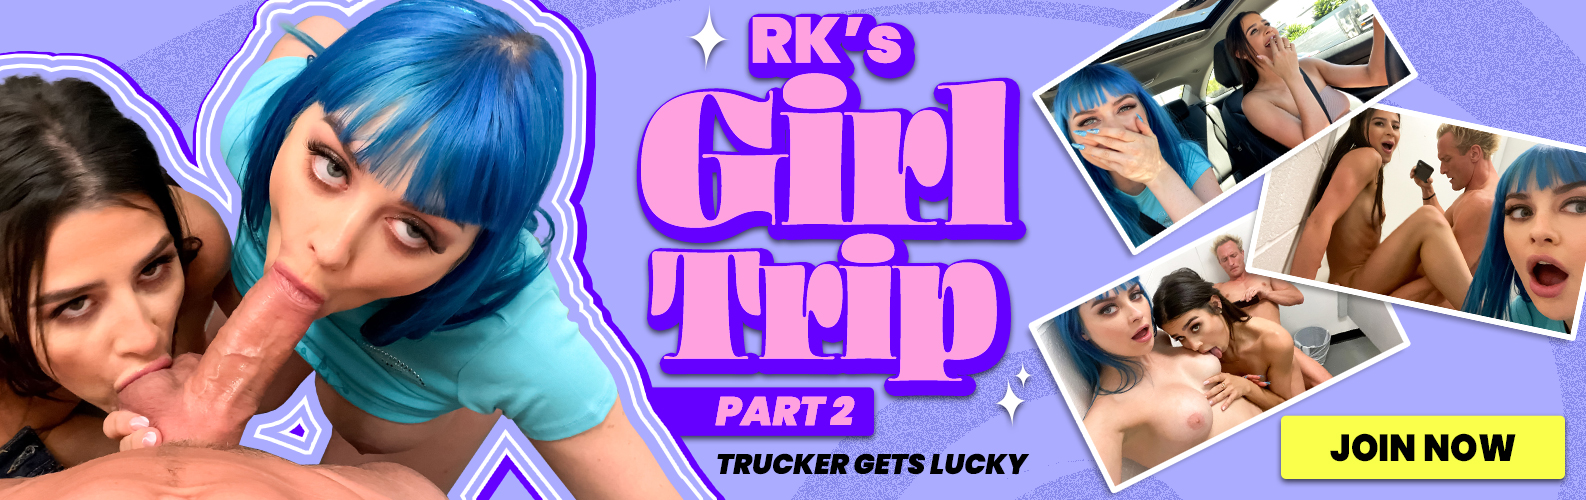 RKS GIRL TRIP EP 2 BY RK